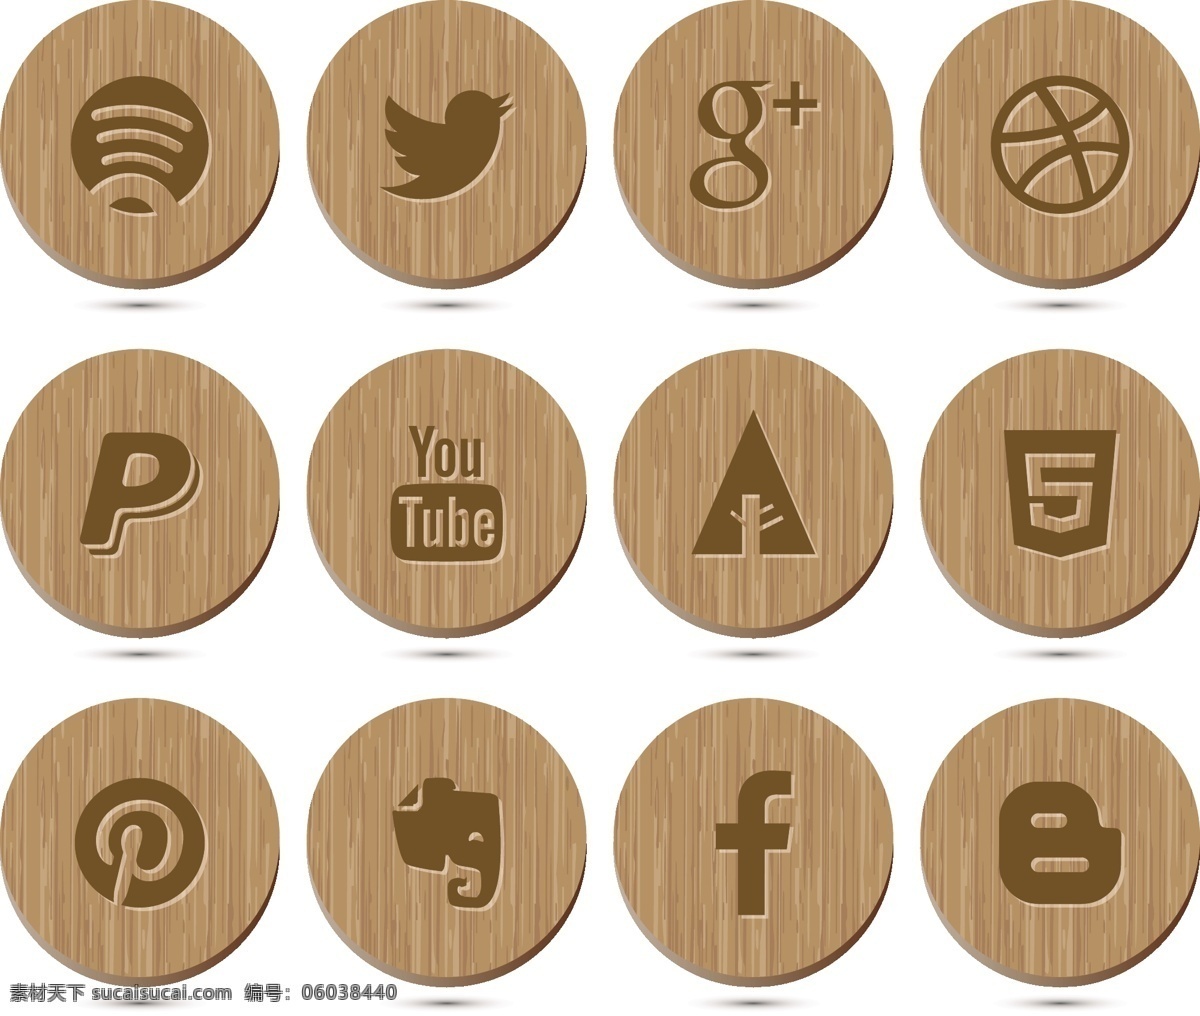 木制 风格 社交 媒体 图标 收藏 社交媒体图标 木制风格 木制风格图标 木制图标 矢量图标